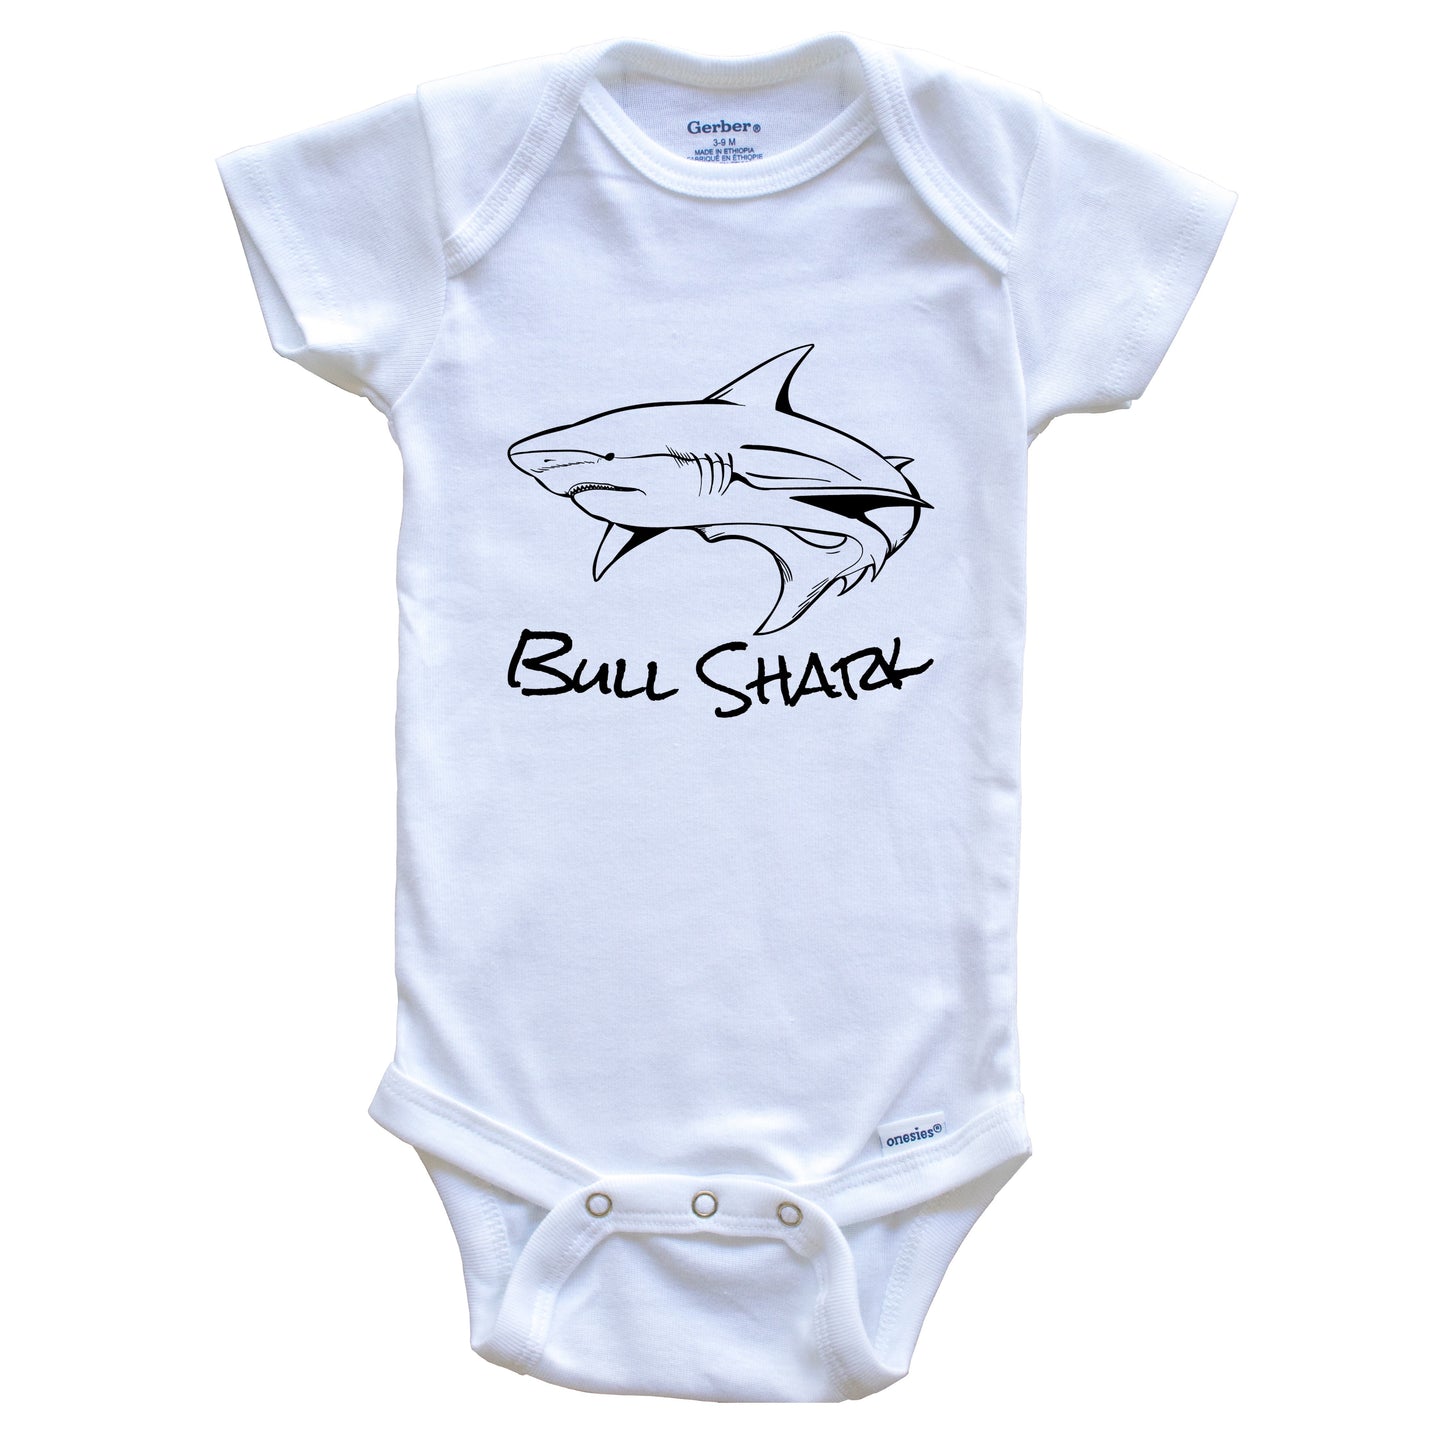 Bull Shark Sketch Cool Shark Baby Onesie